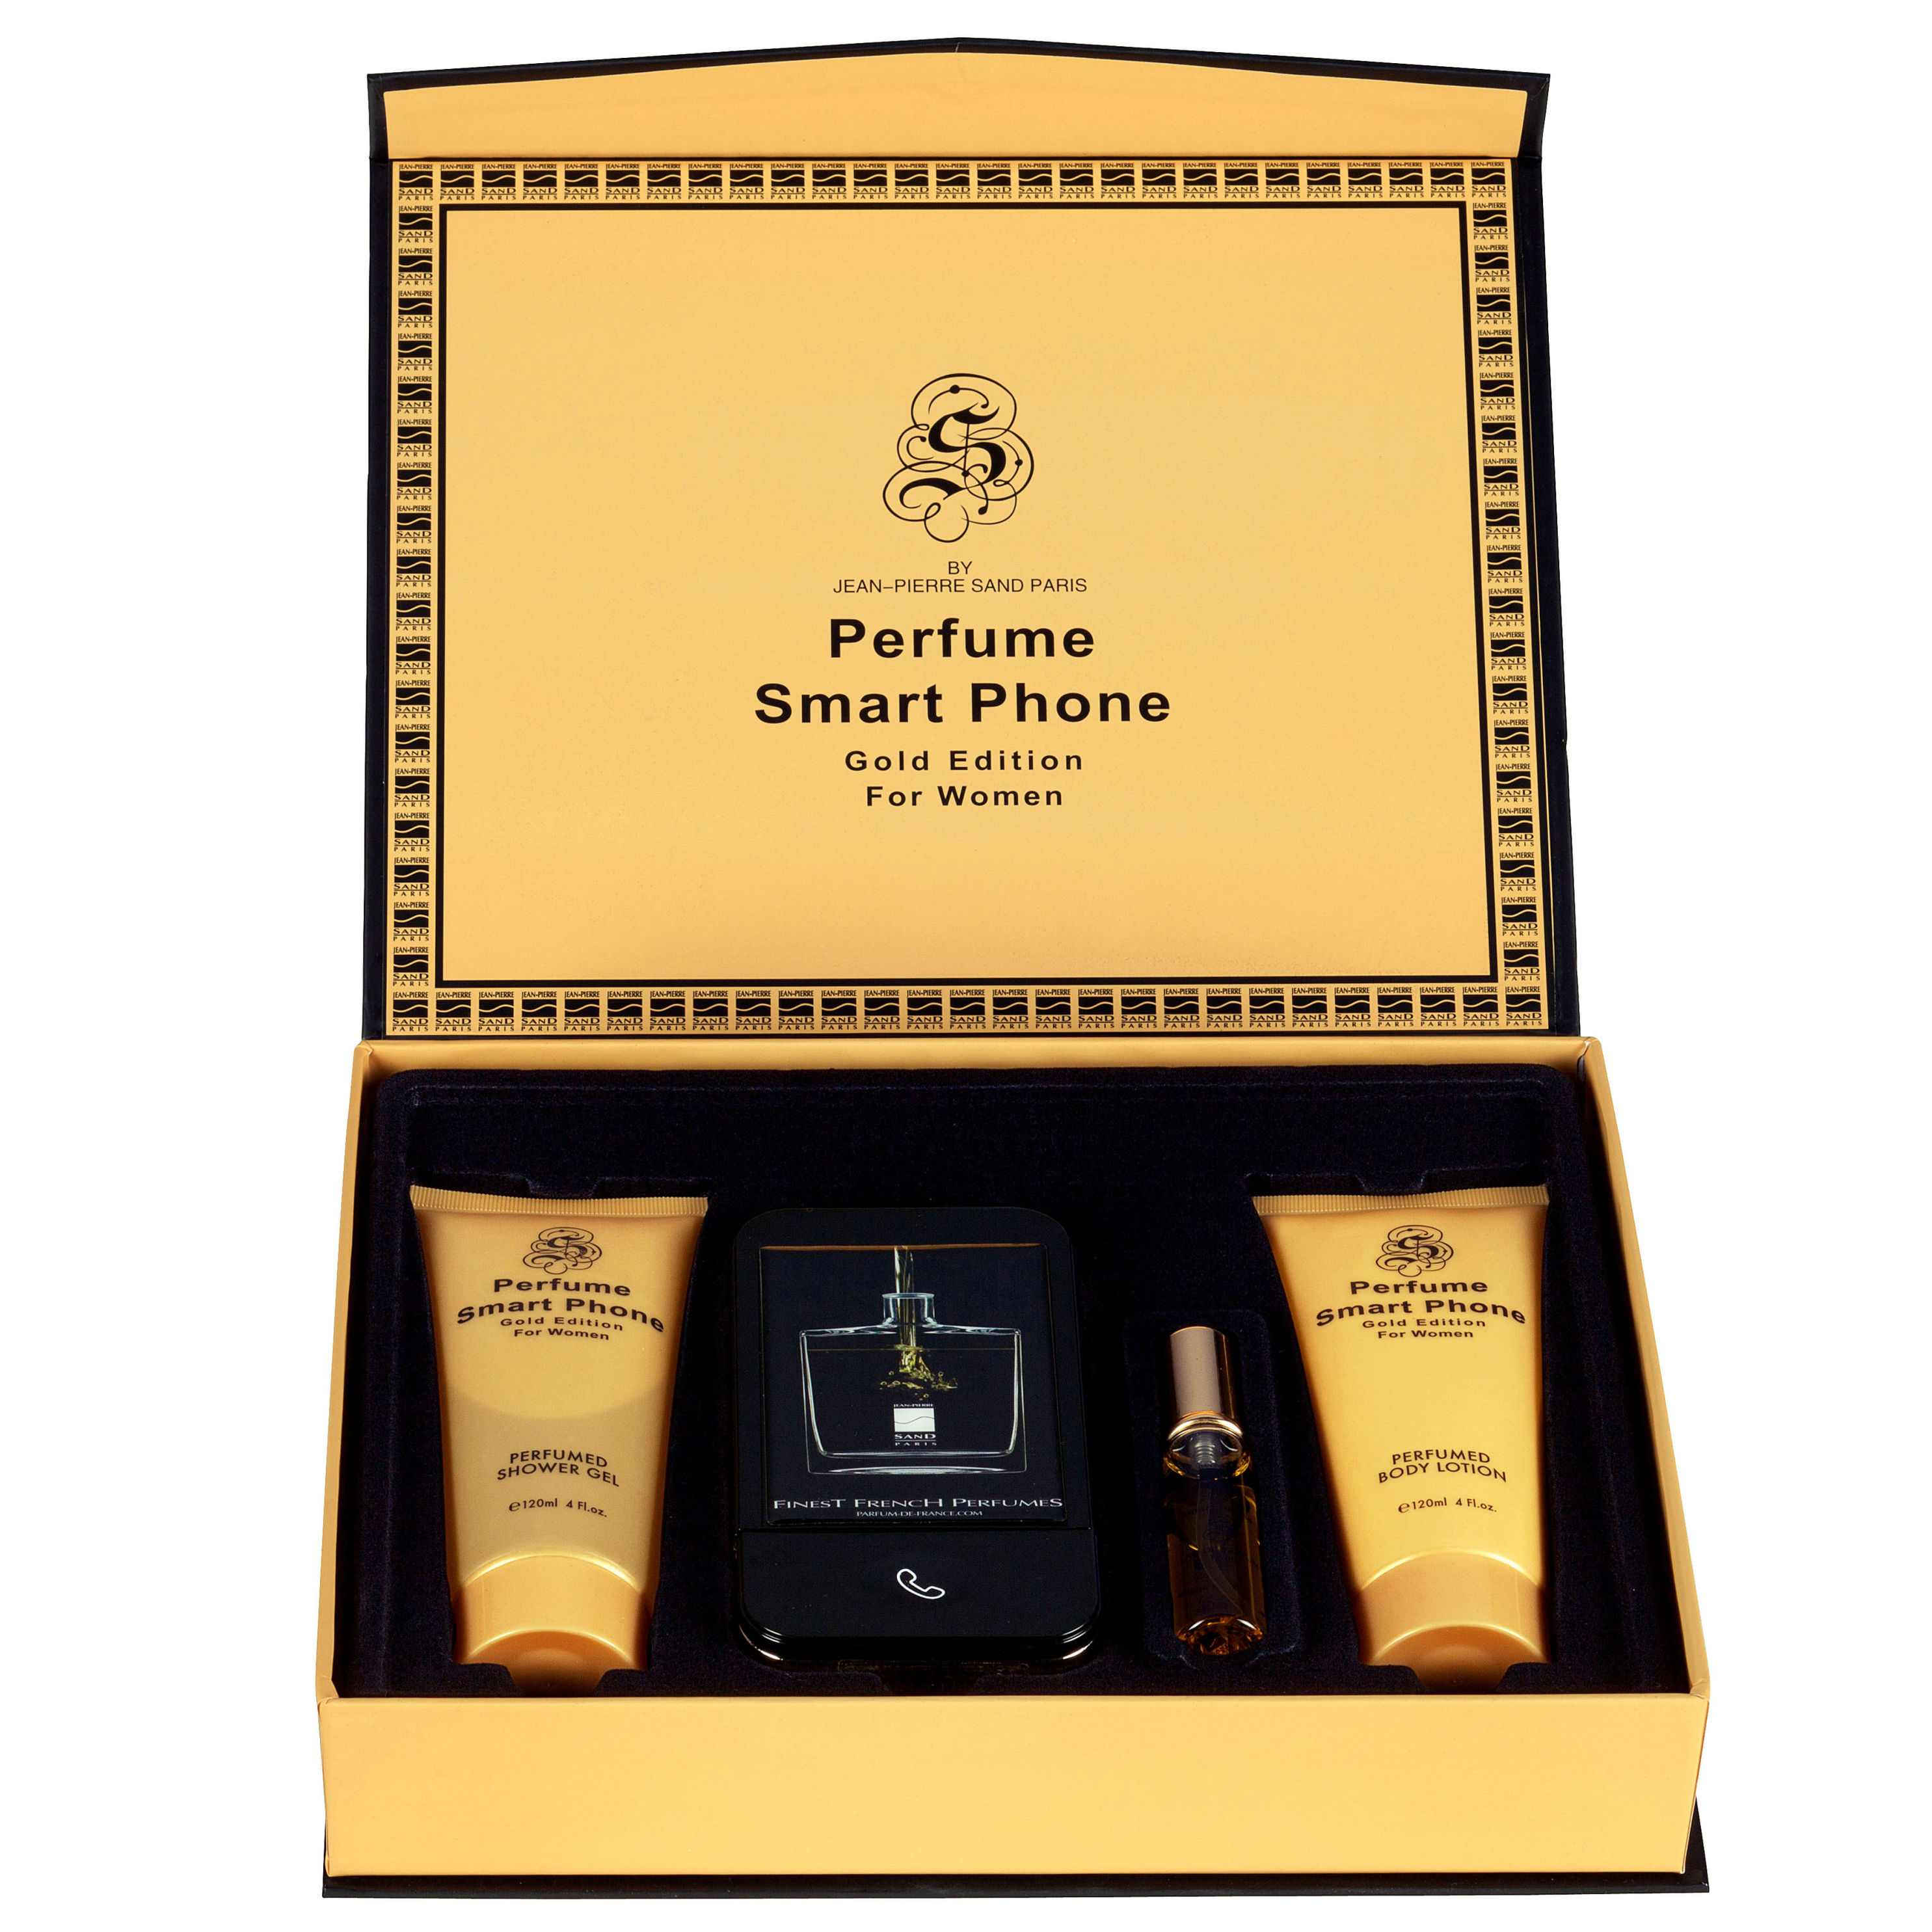 Smartphone Gold-Edition, Women, Eau de Parfum, 4er-Set - Kommentare -  Weltbild.at